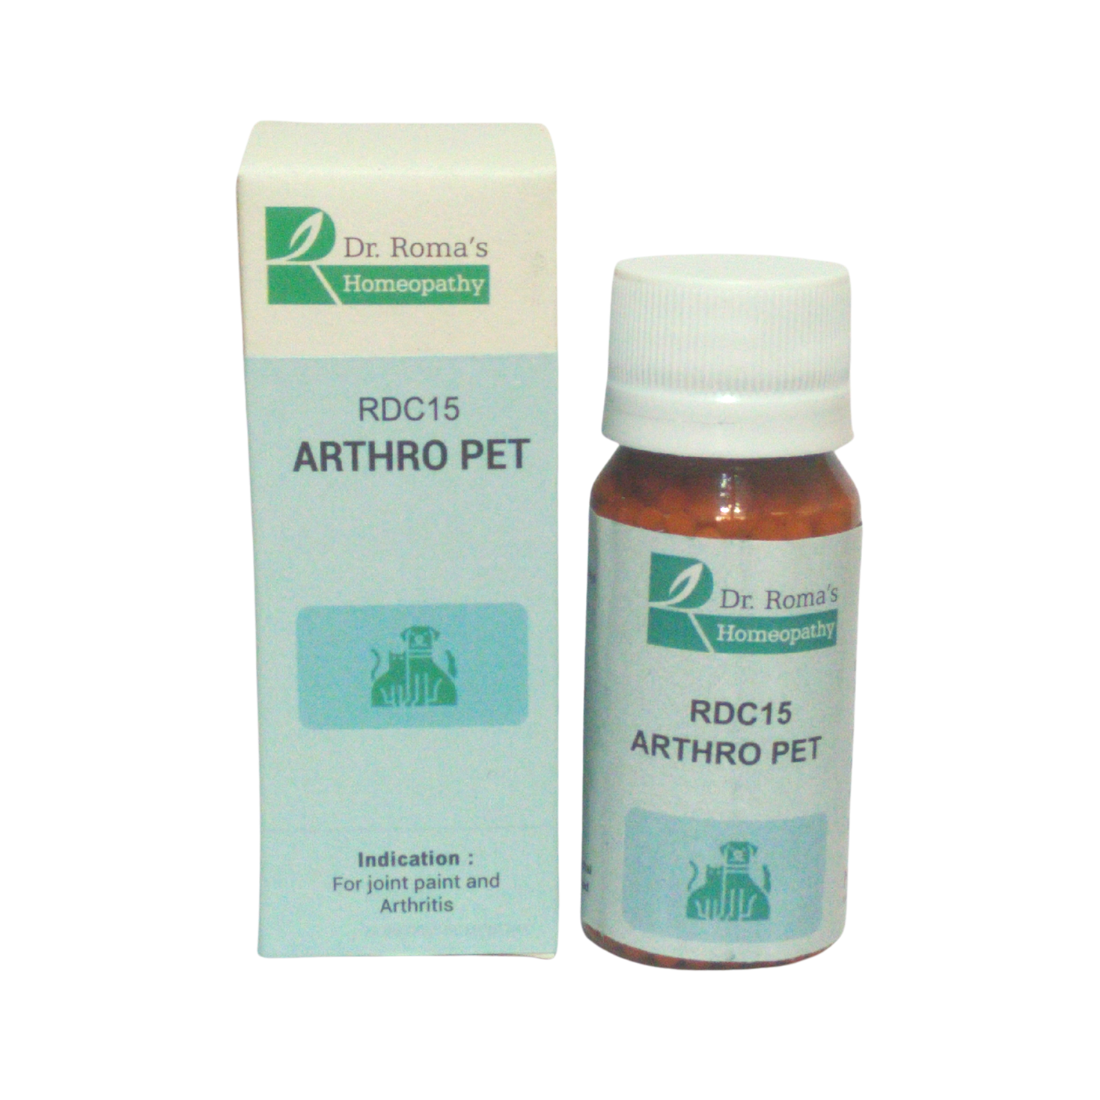 ARTHRO PET for ARTHRITIS - RDC 15